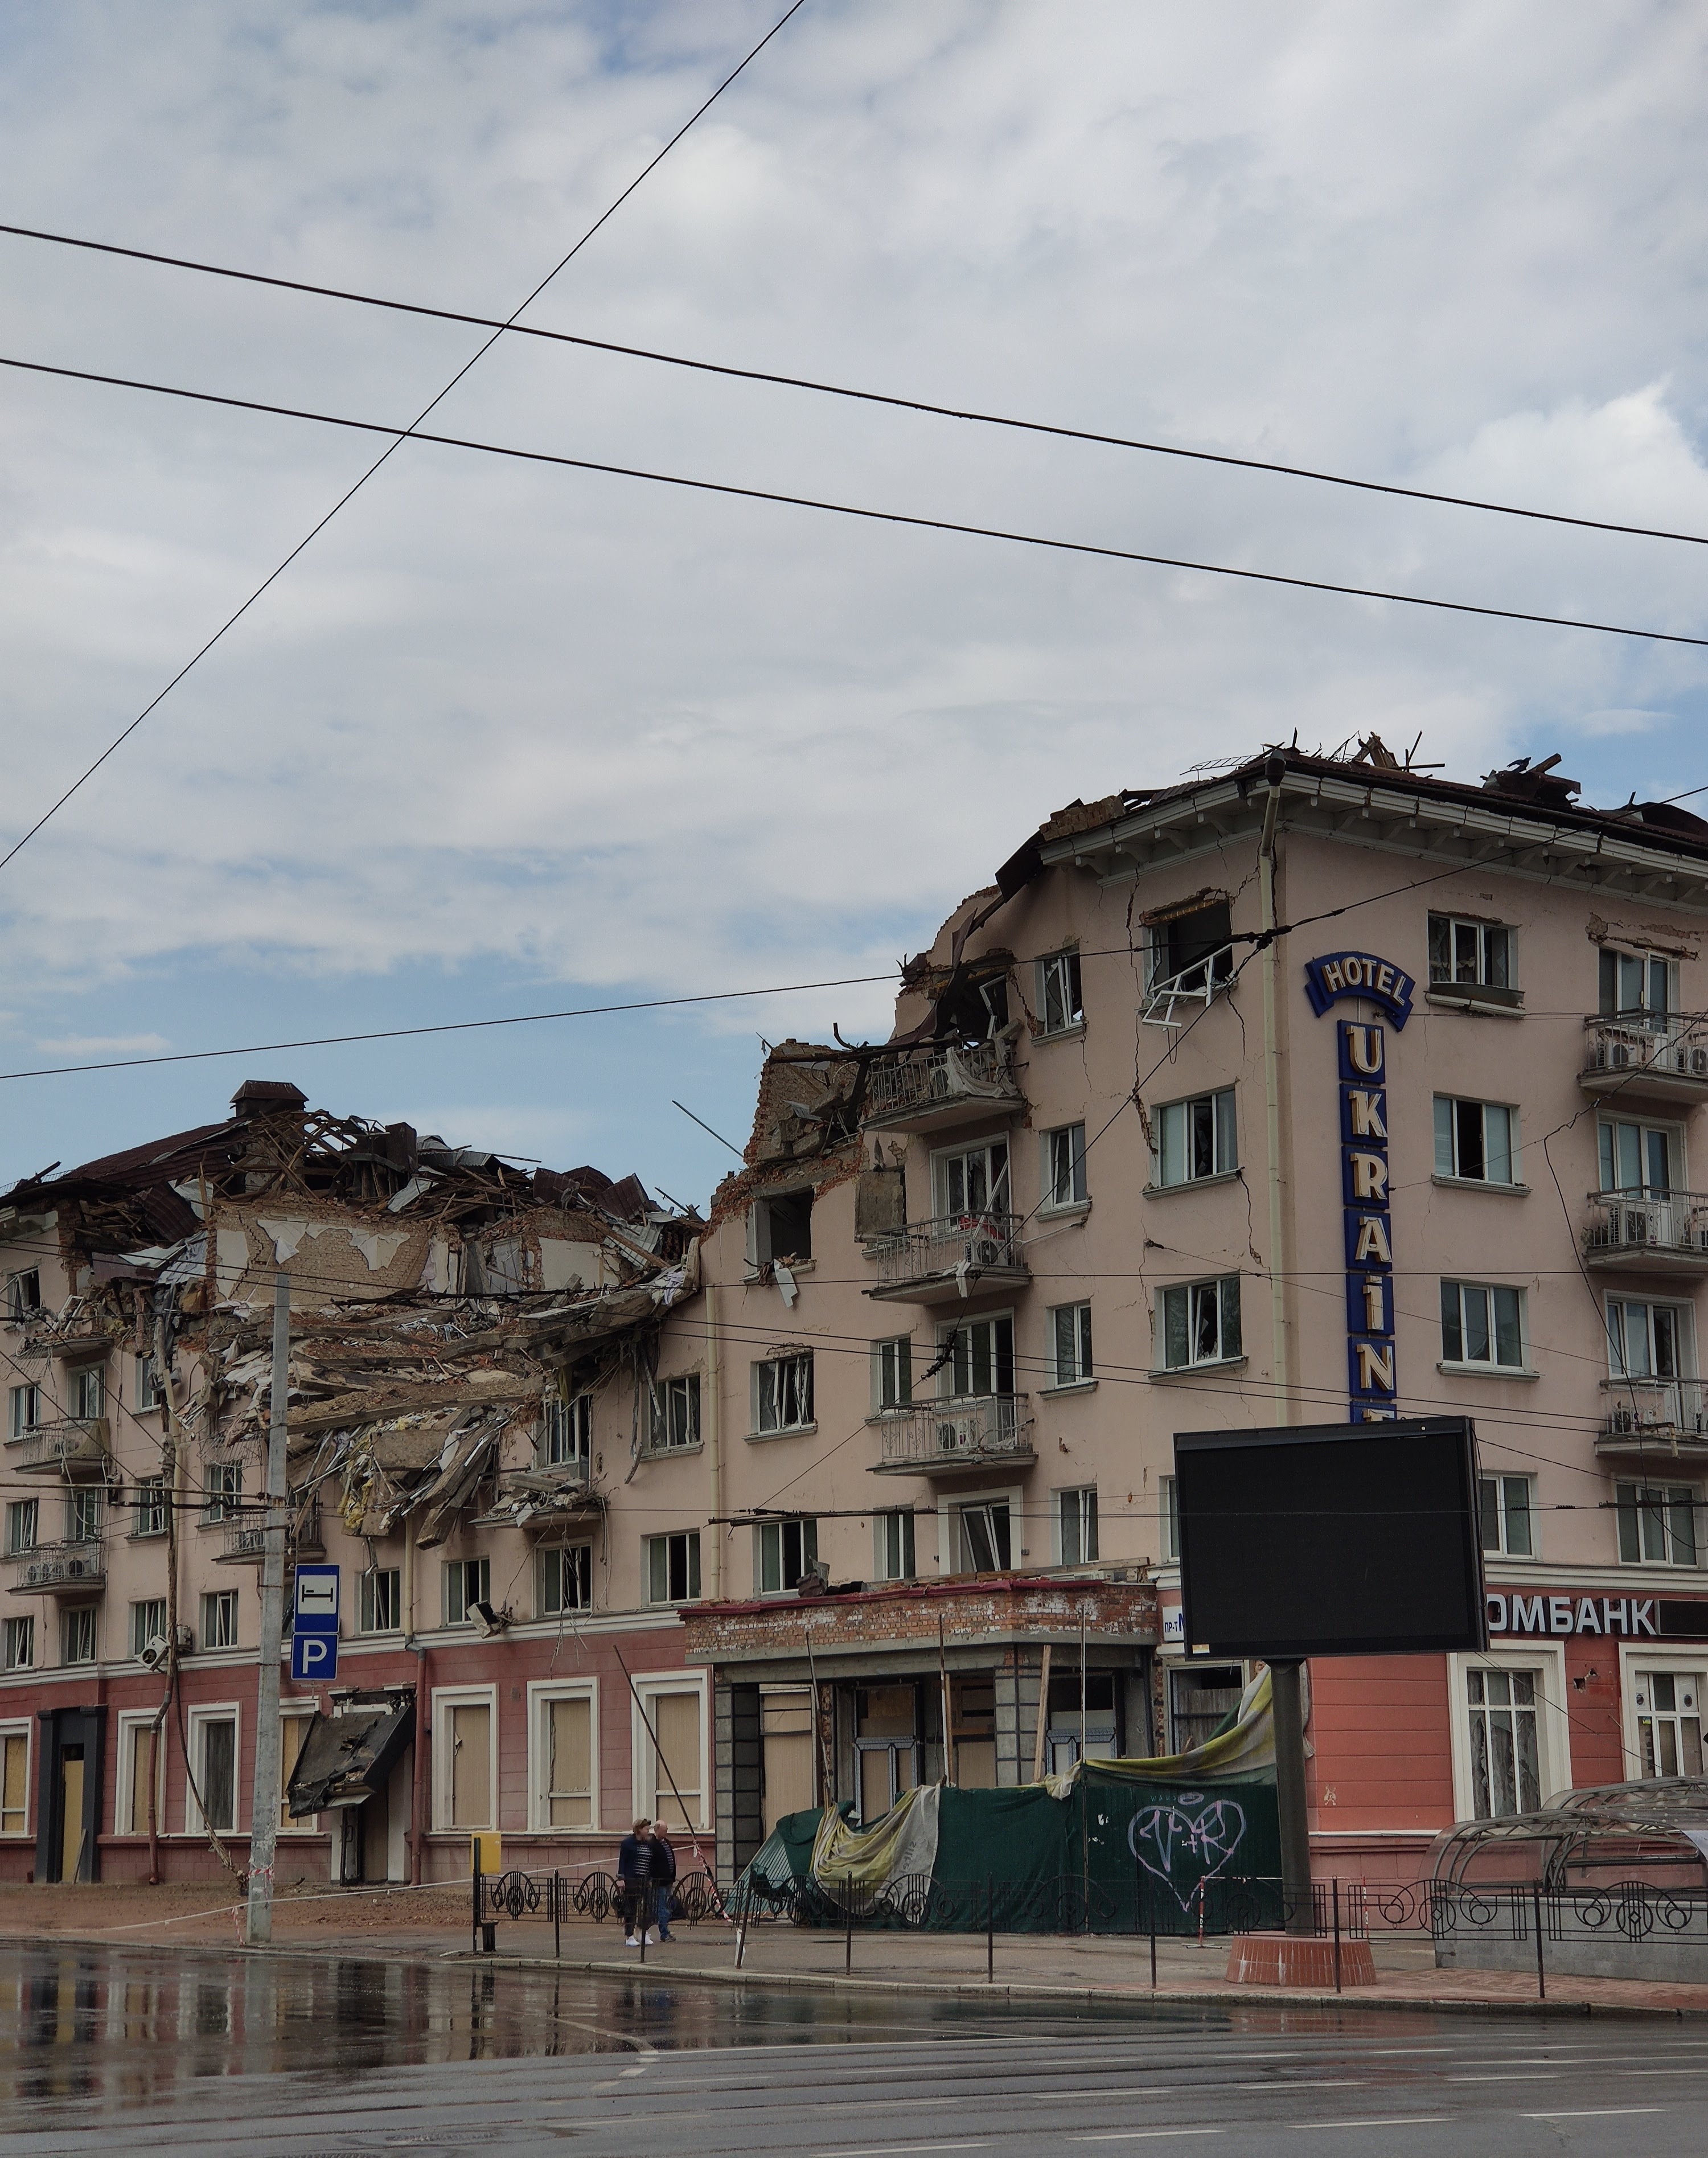 The destroyed Hotel Ukraine